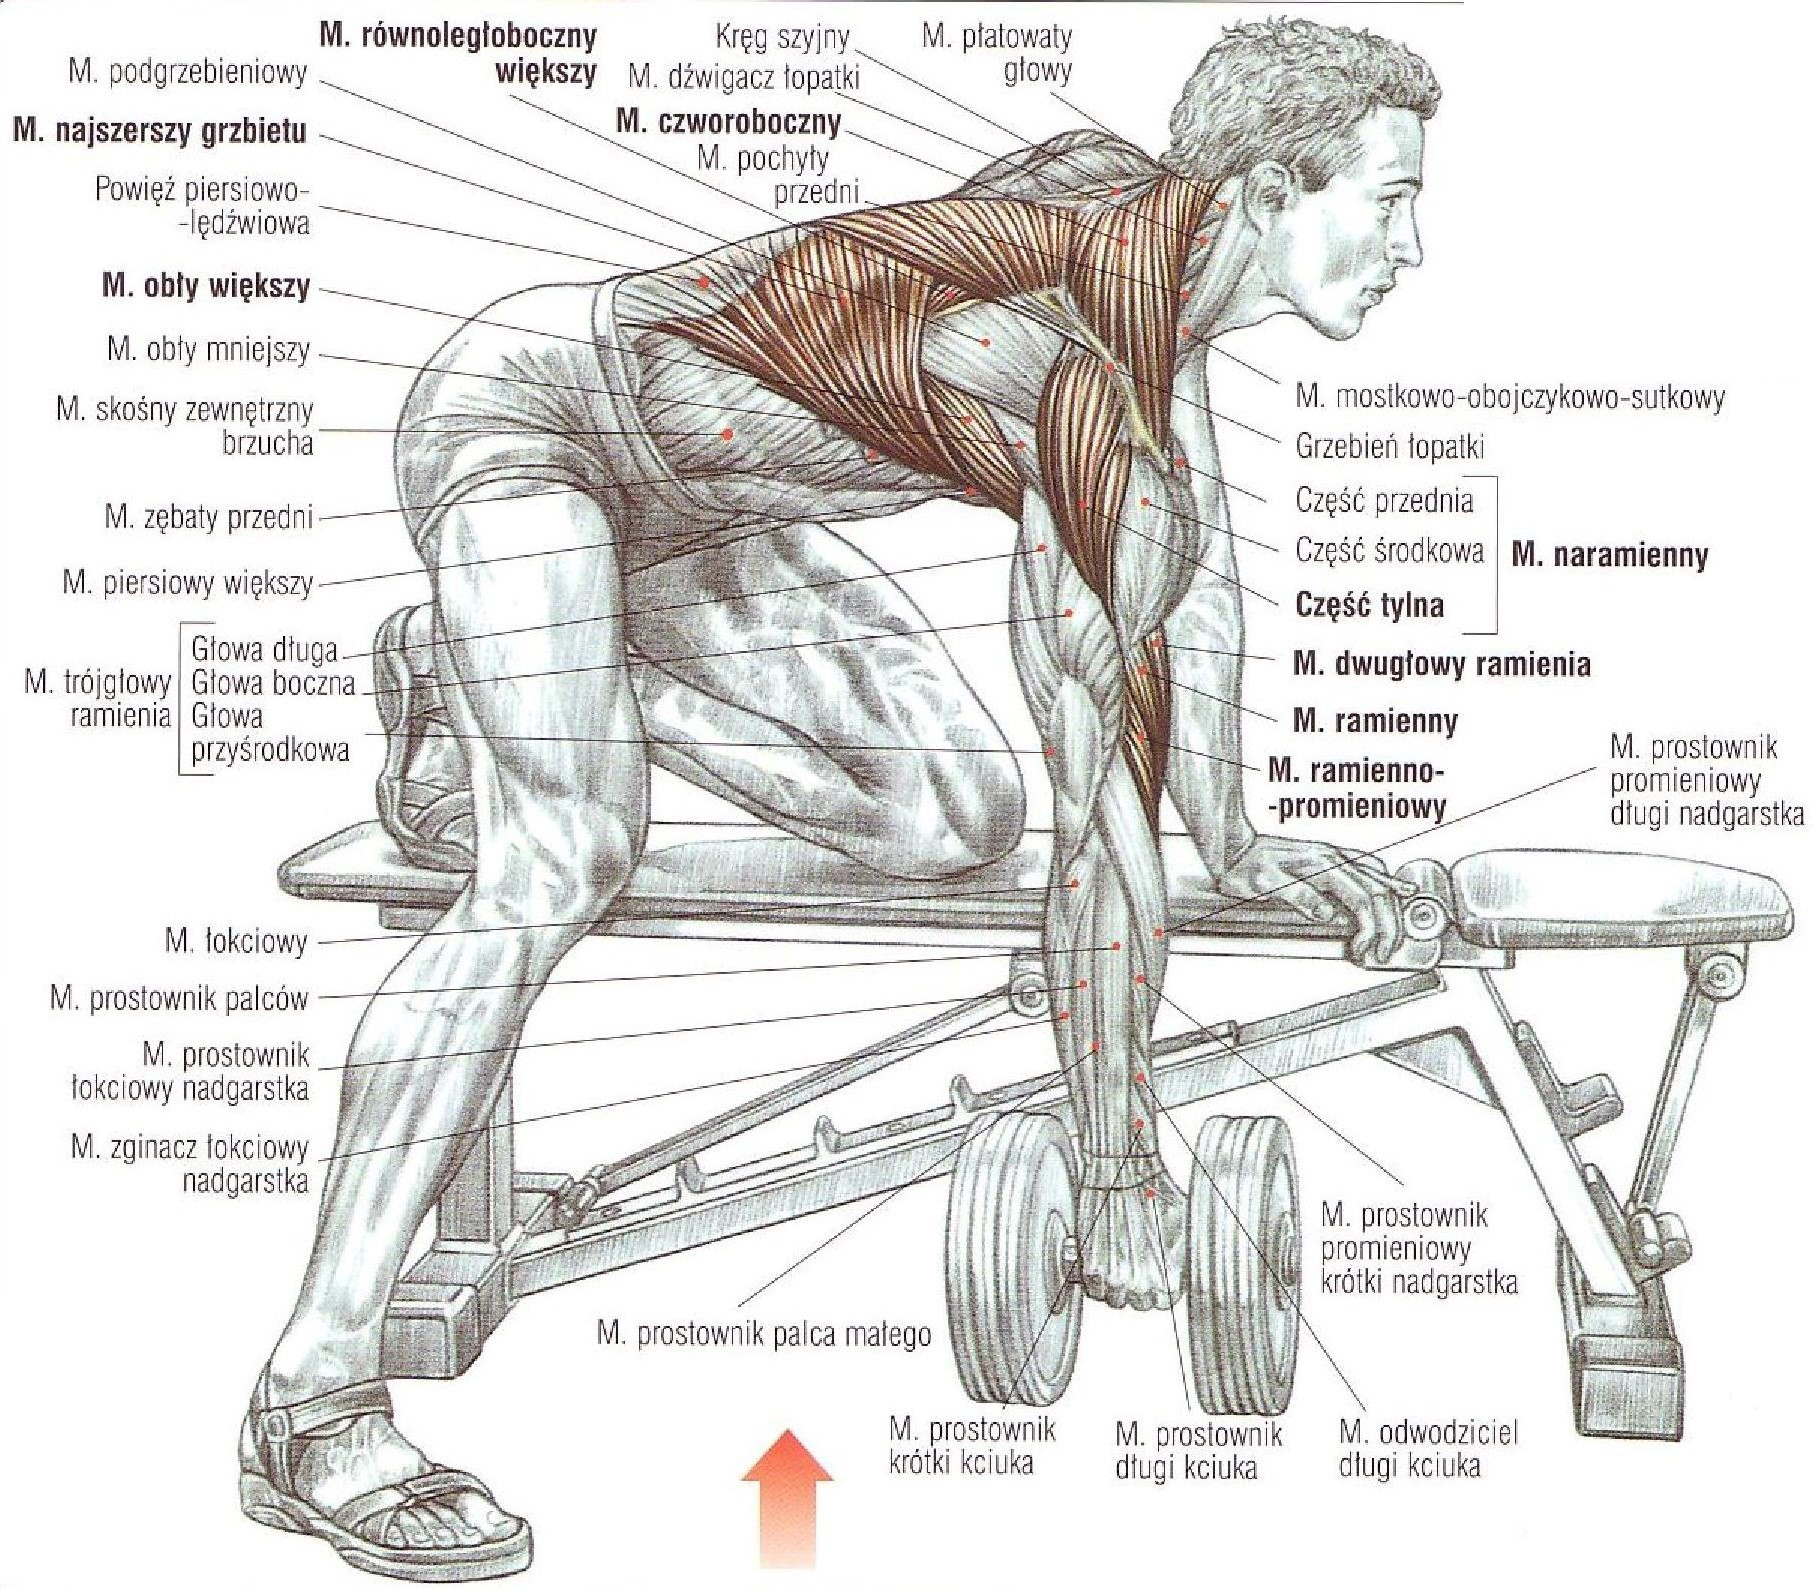 Работа мышц при выполнении упражнений